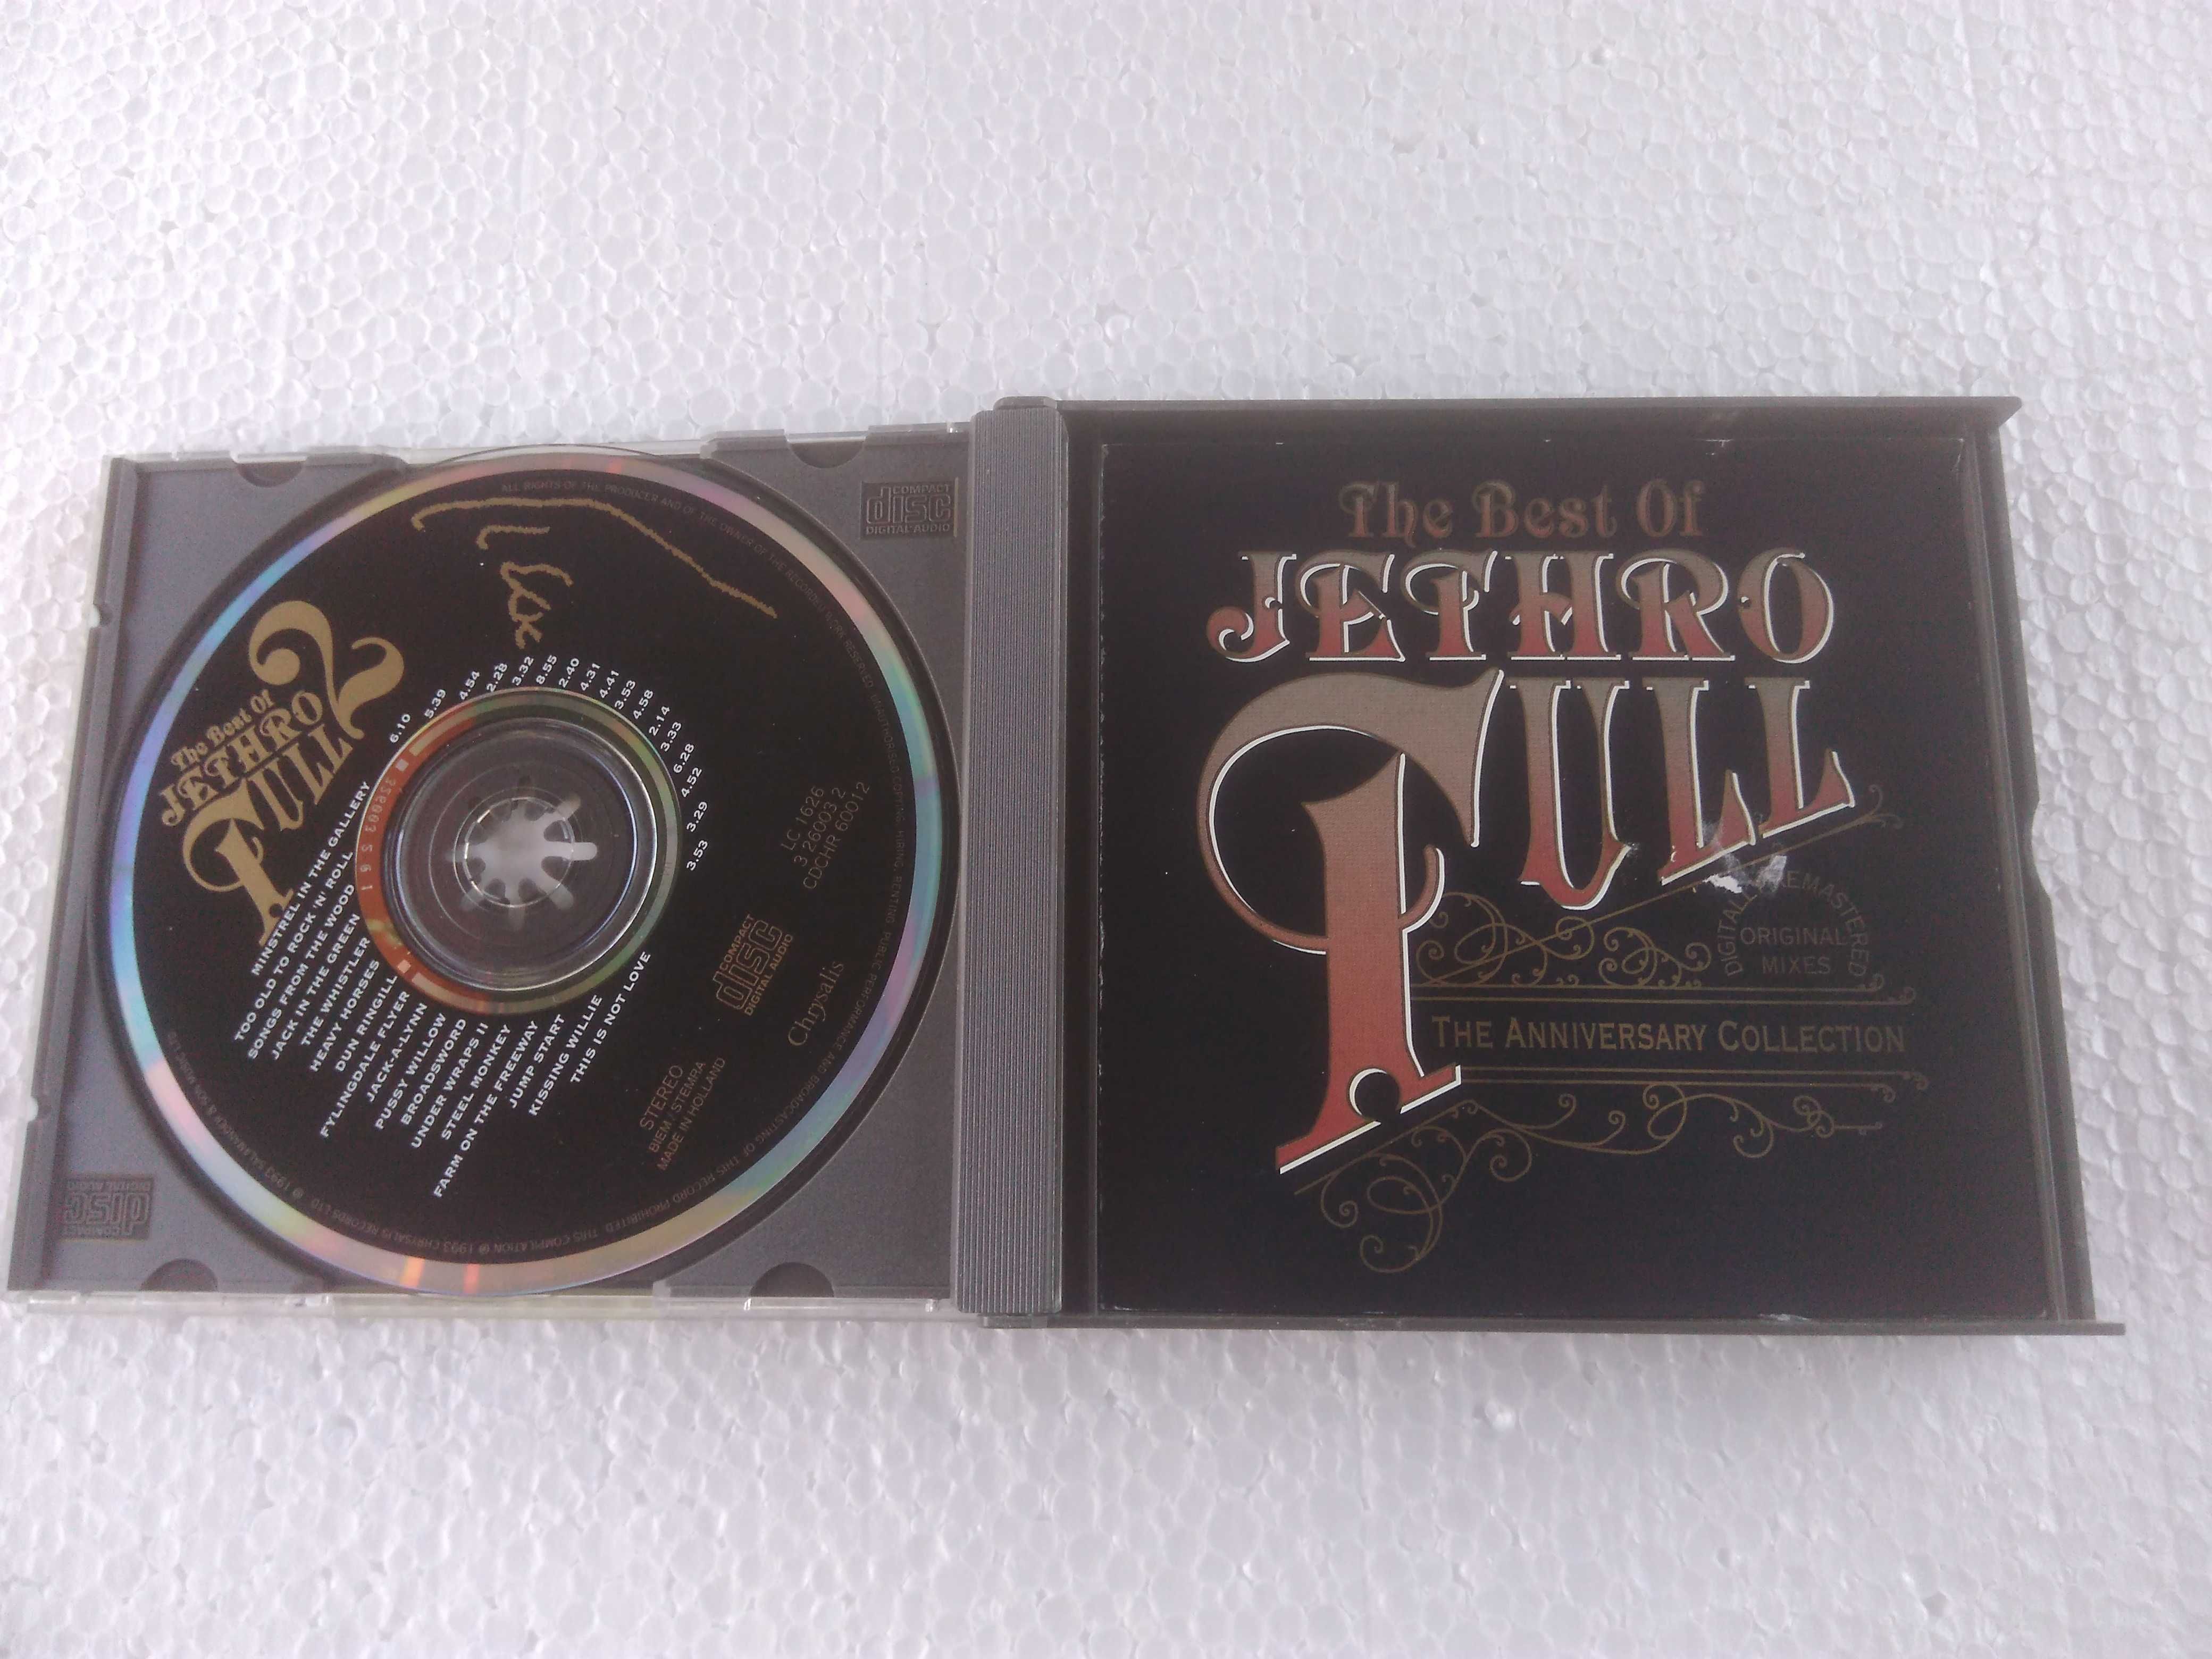 Jethro Tull The best of 2 CD